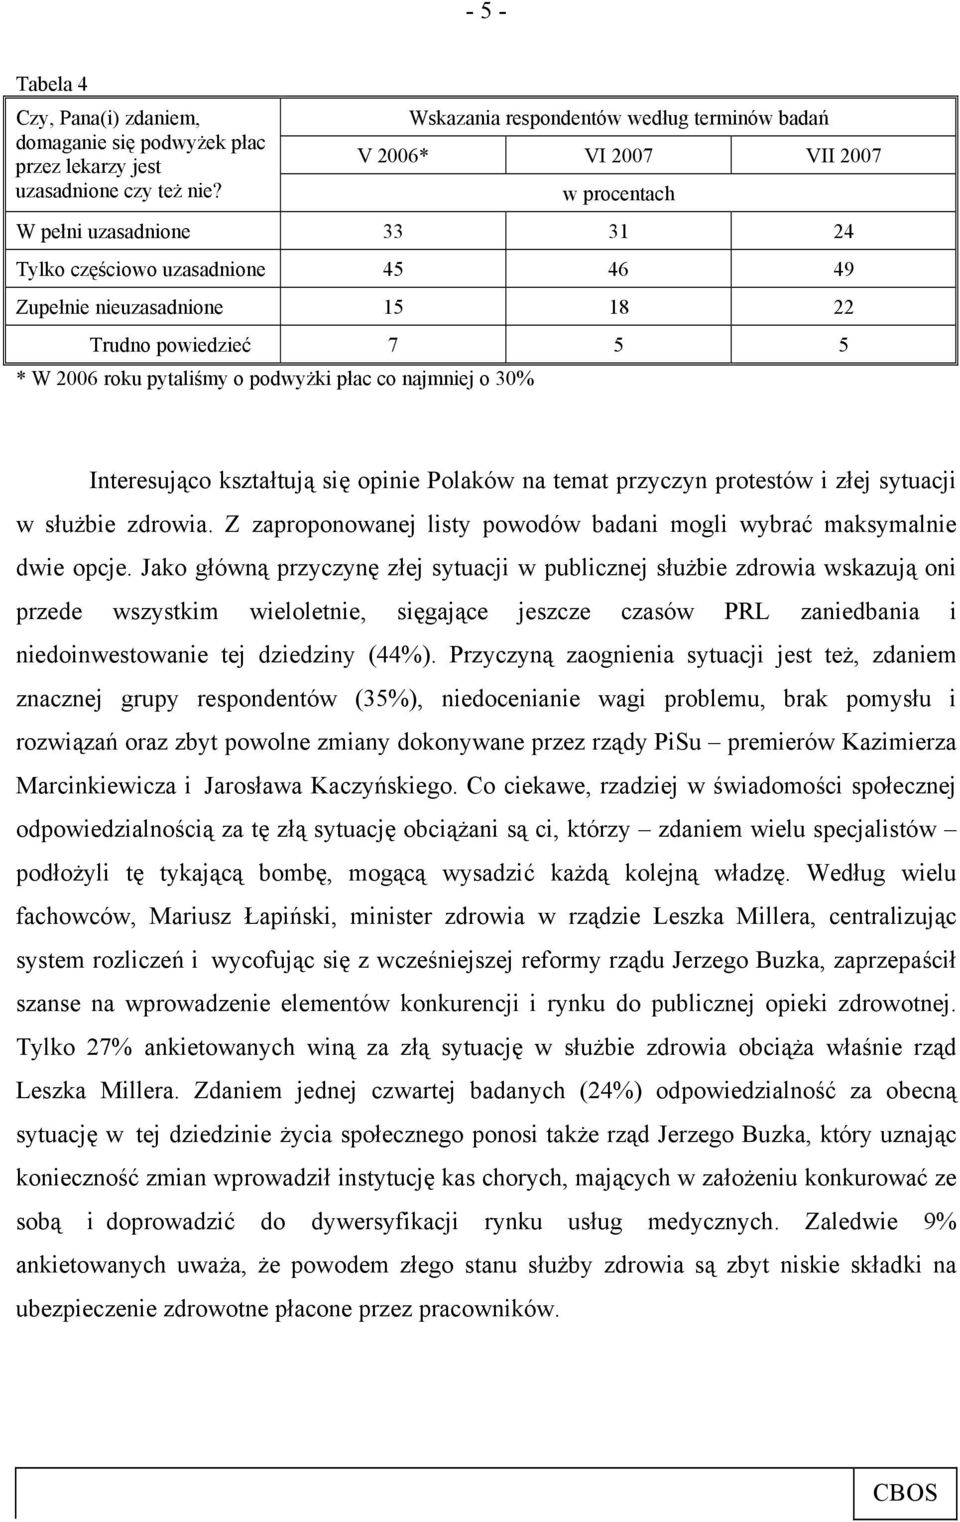 7 5 5 * W 2006 roku pytaliśmy o podwyżki płac co najmniej o 30% Interesująco kształtują się opinie Polaków na temat przyczyn protestów i złej sytuacji w służbie zdrowia.